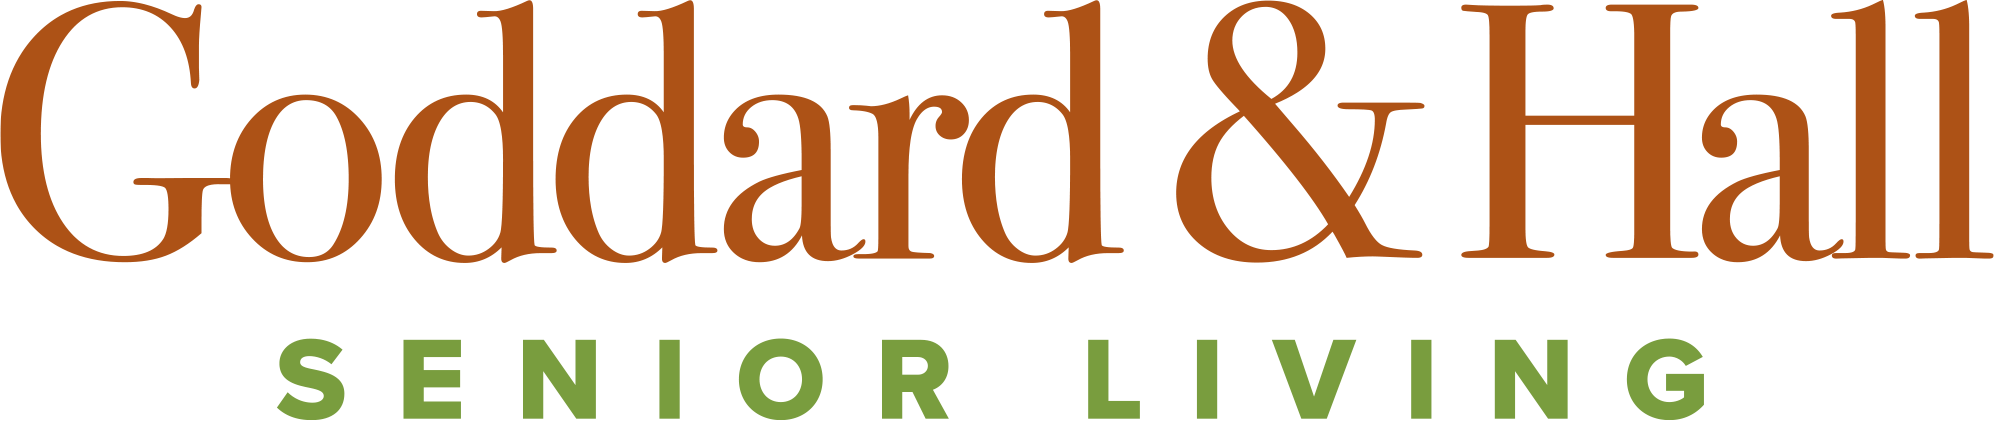 Goddard_Hall_logo_horiz_RGB